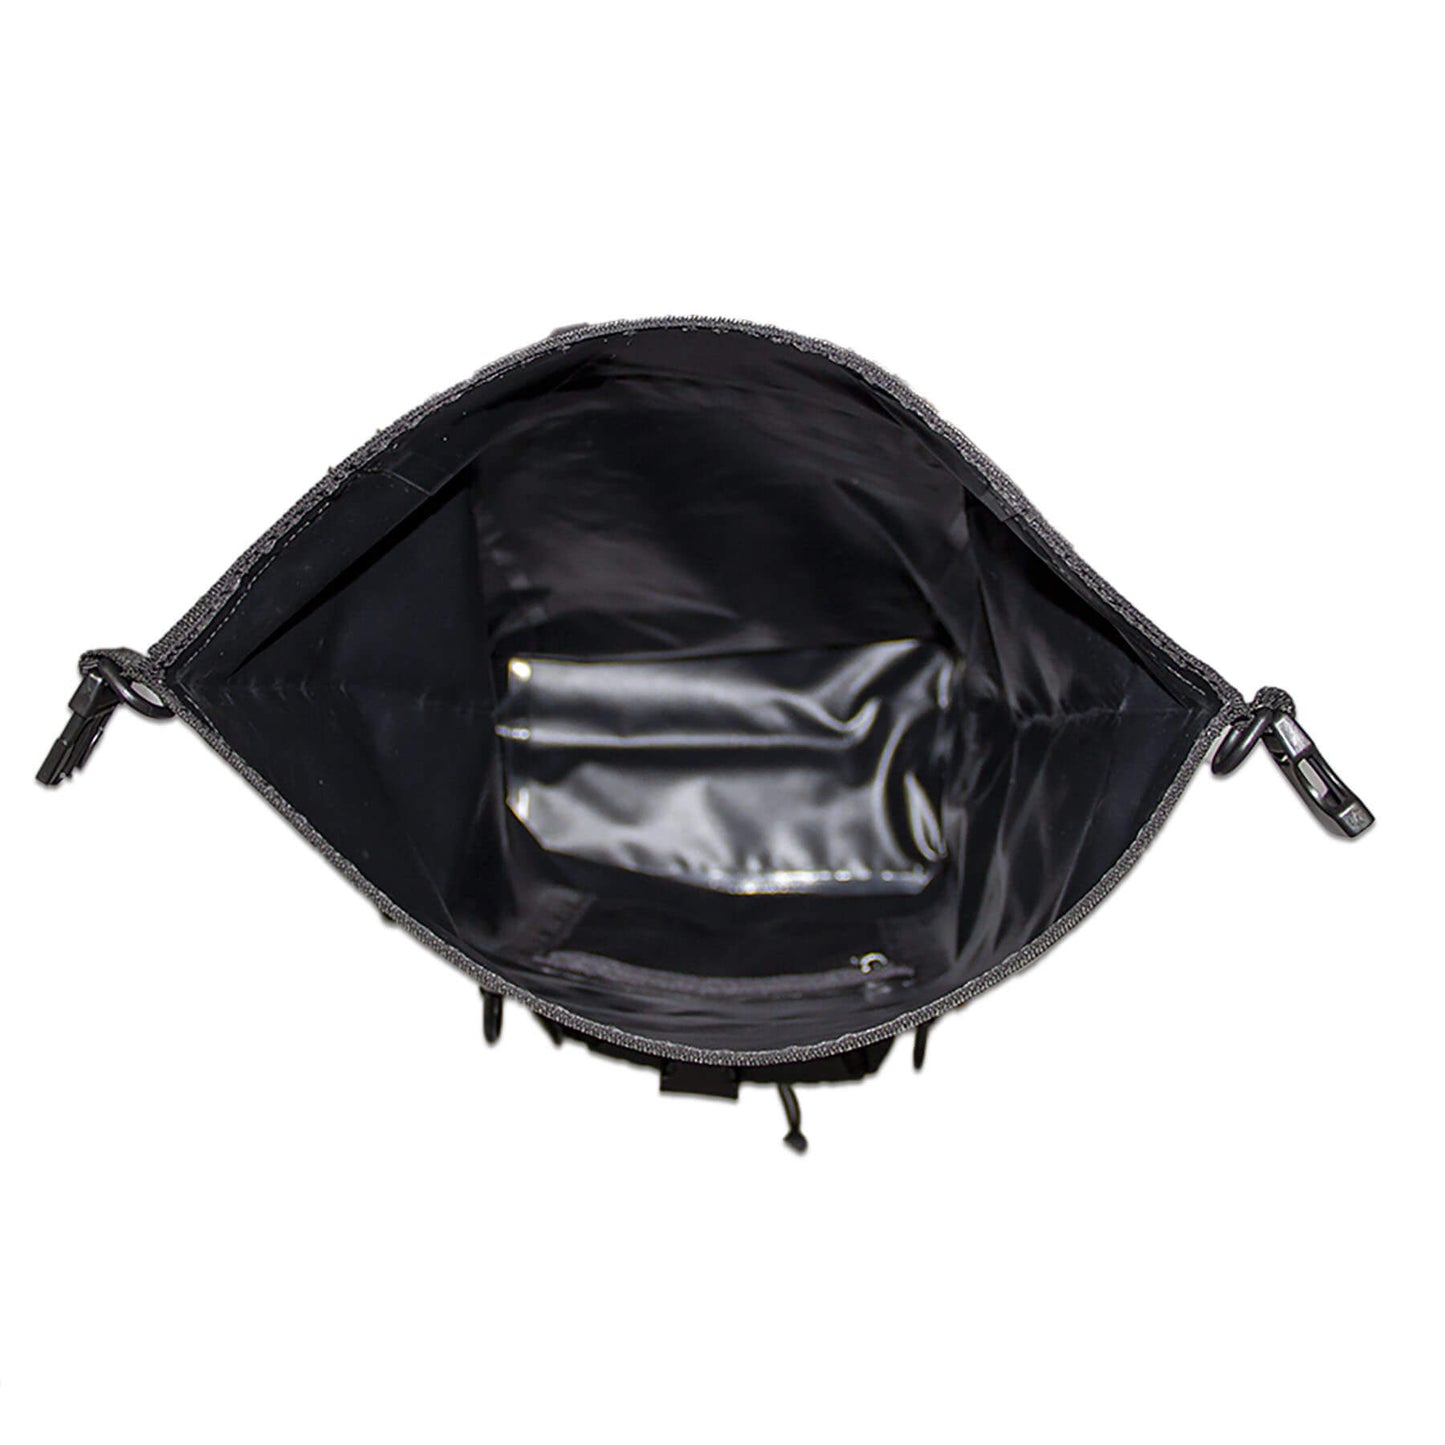 waterproof dry bag backpack 30 litres in black inside view